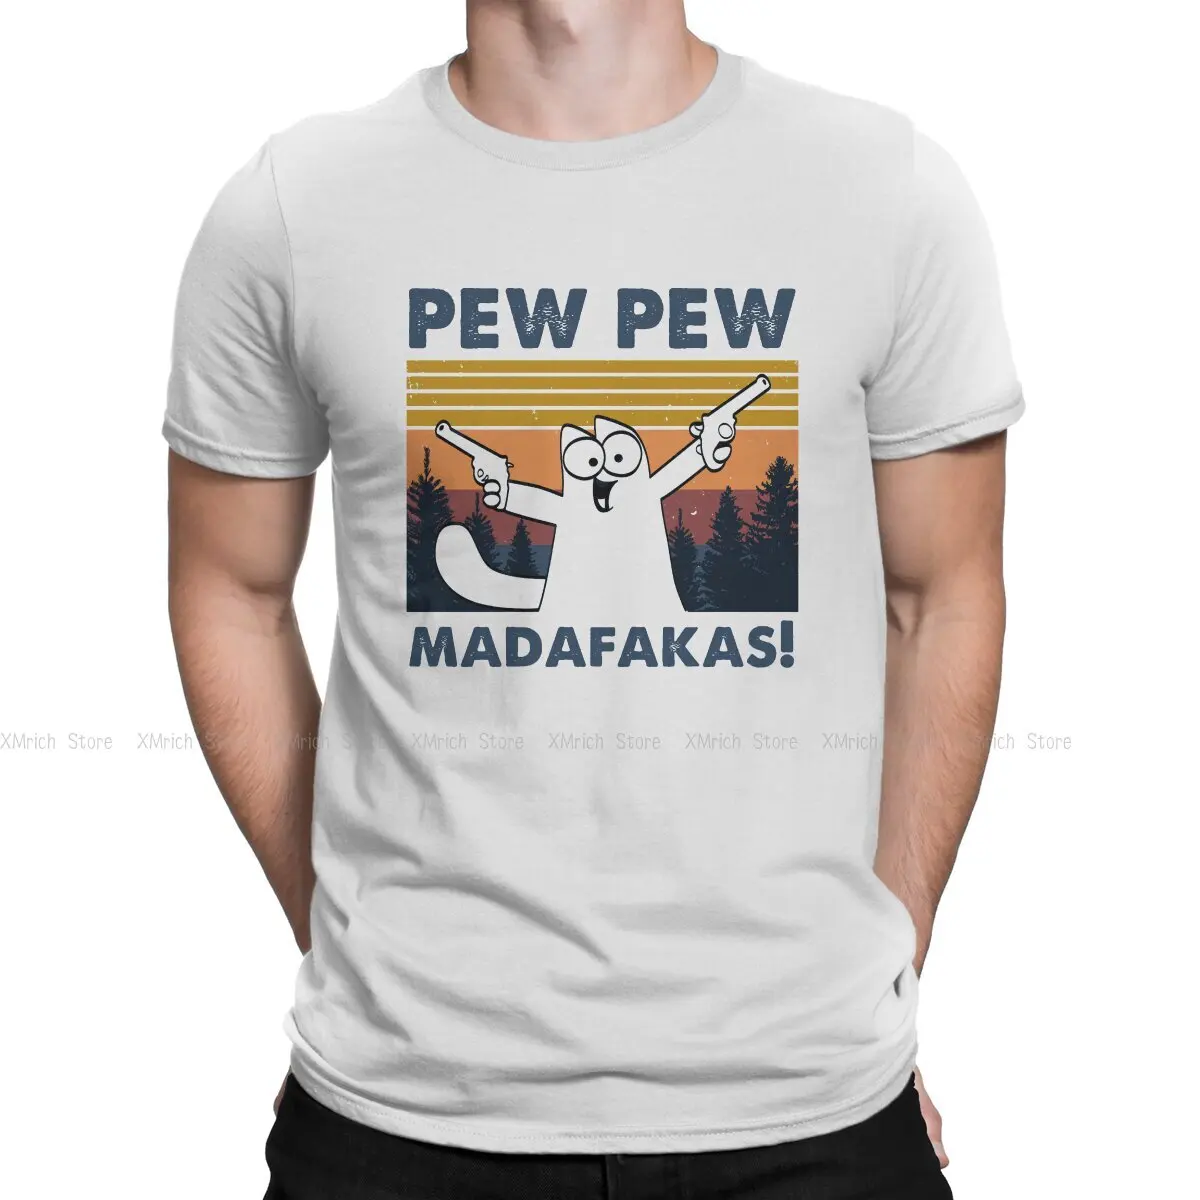 

Мужская футболка с большими глазами и кошкой Pew Madafakas, топы с круглым вырезом, тканевая футболка с юмором, идея для подарка высшего качества